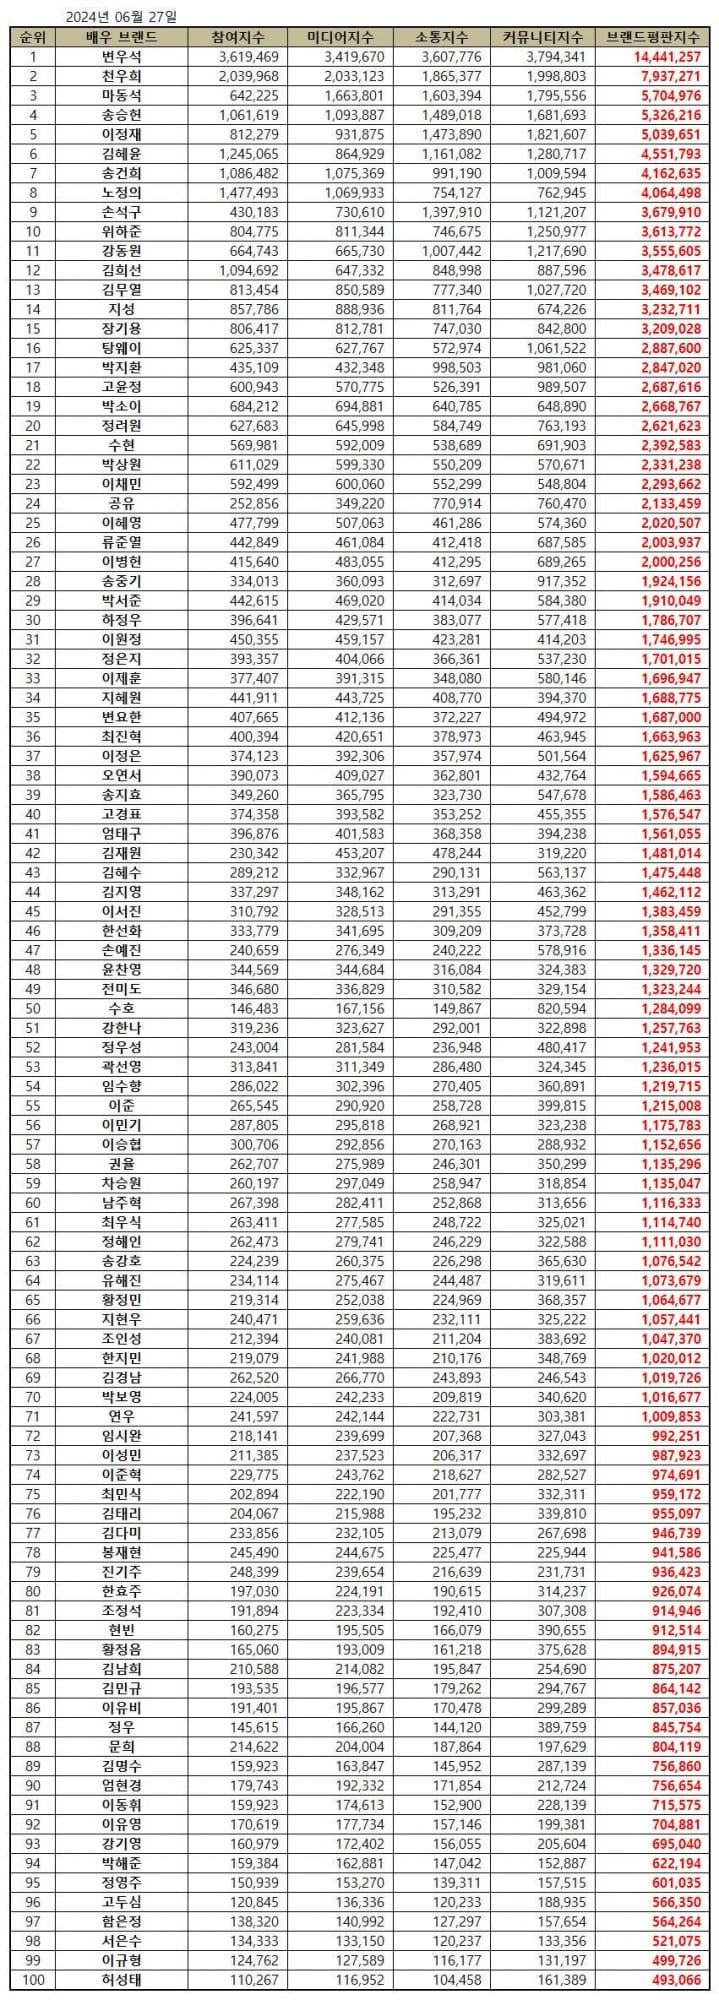 Пён У Сок занял первое место в рейтинге стоимости актерских брендов за июнь, за ним следуют Чон У Хи, Ма Дон Сок и другие